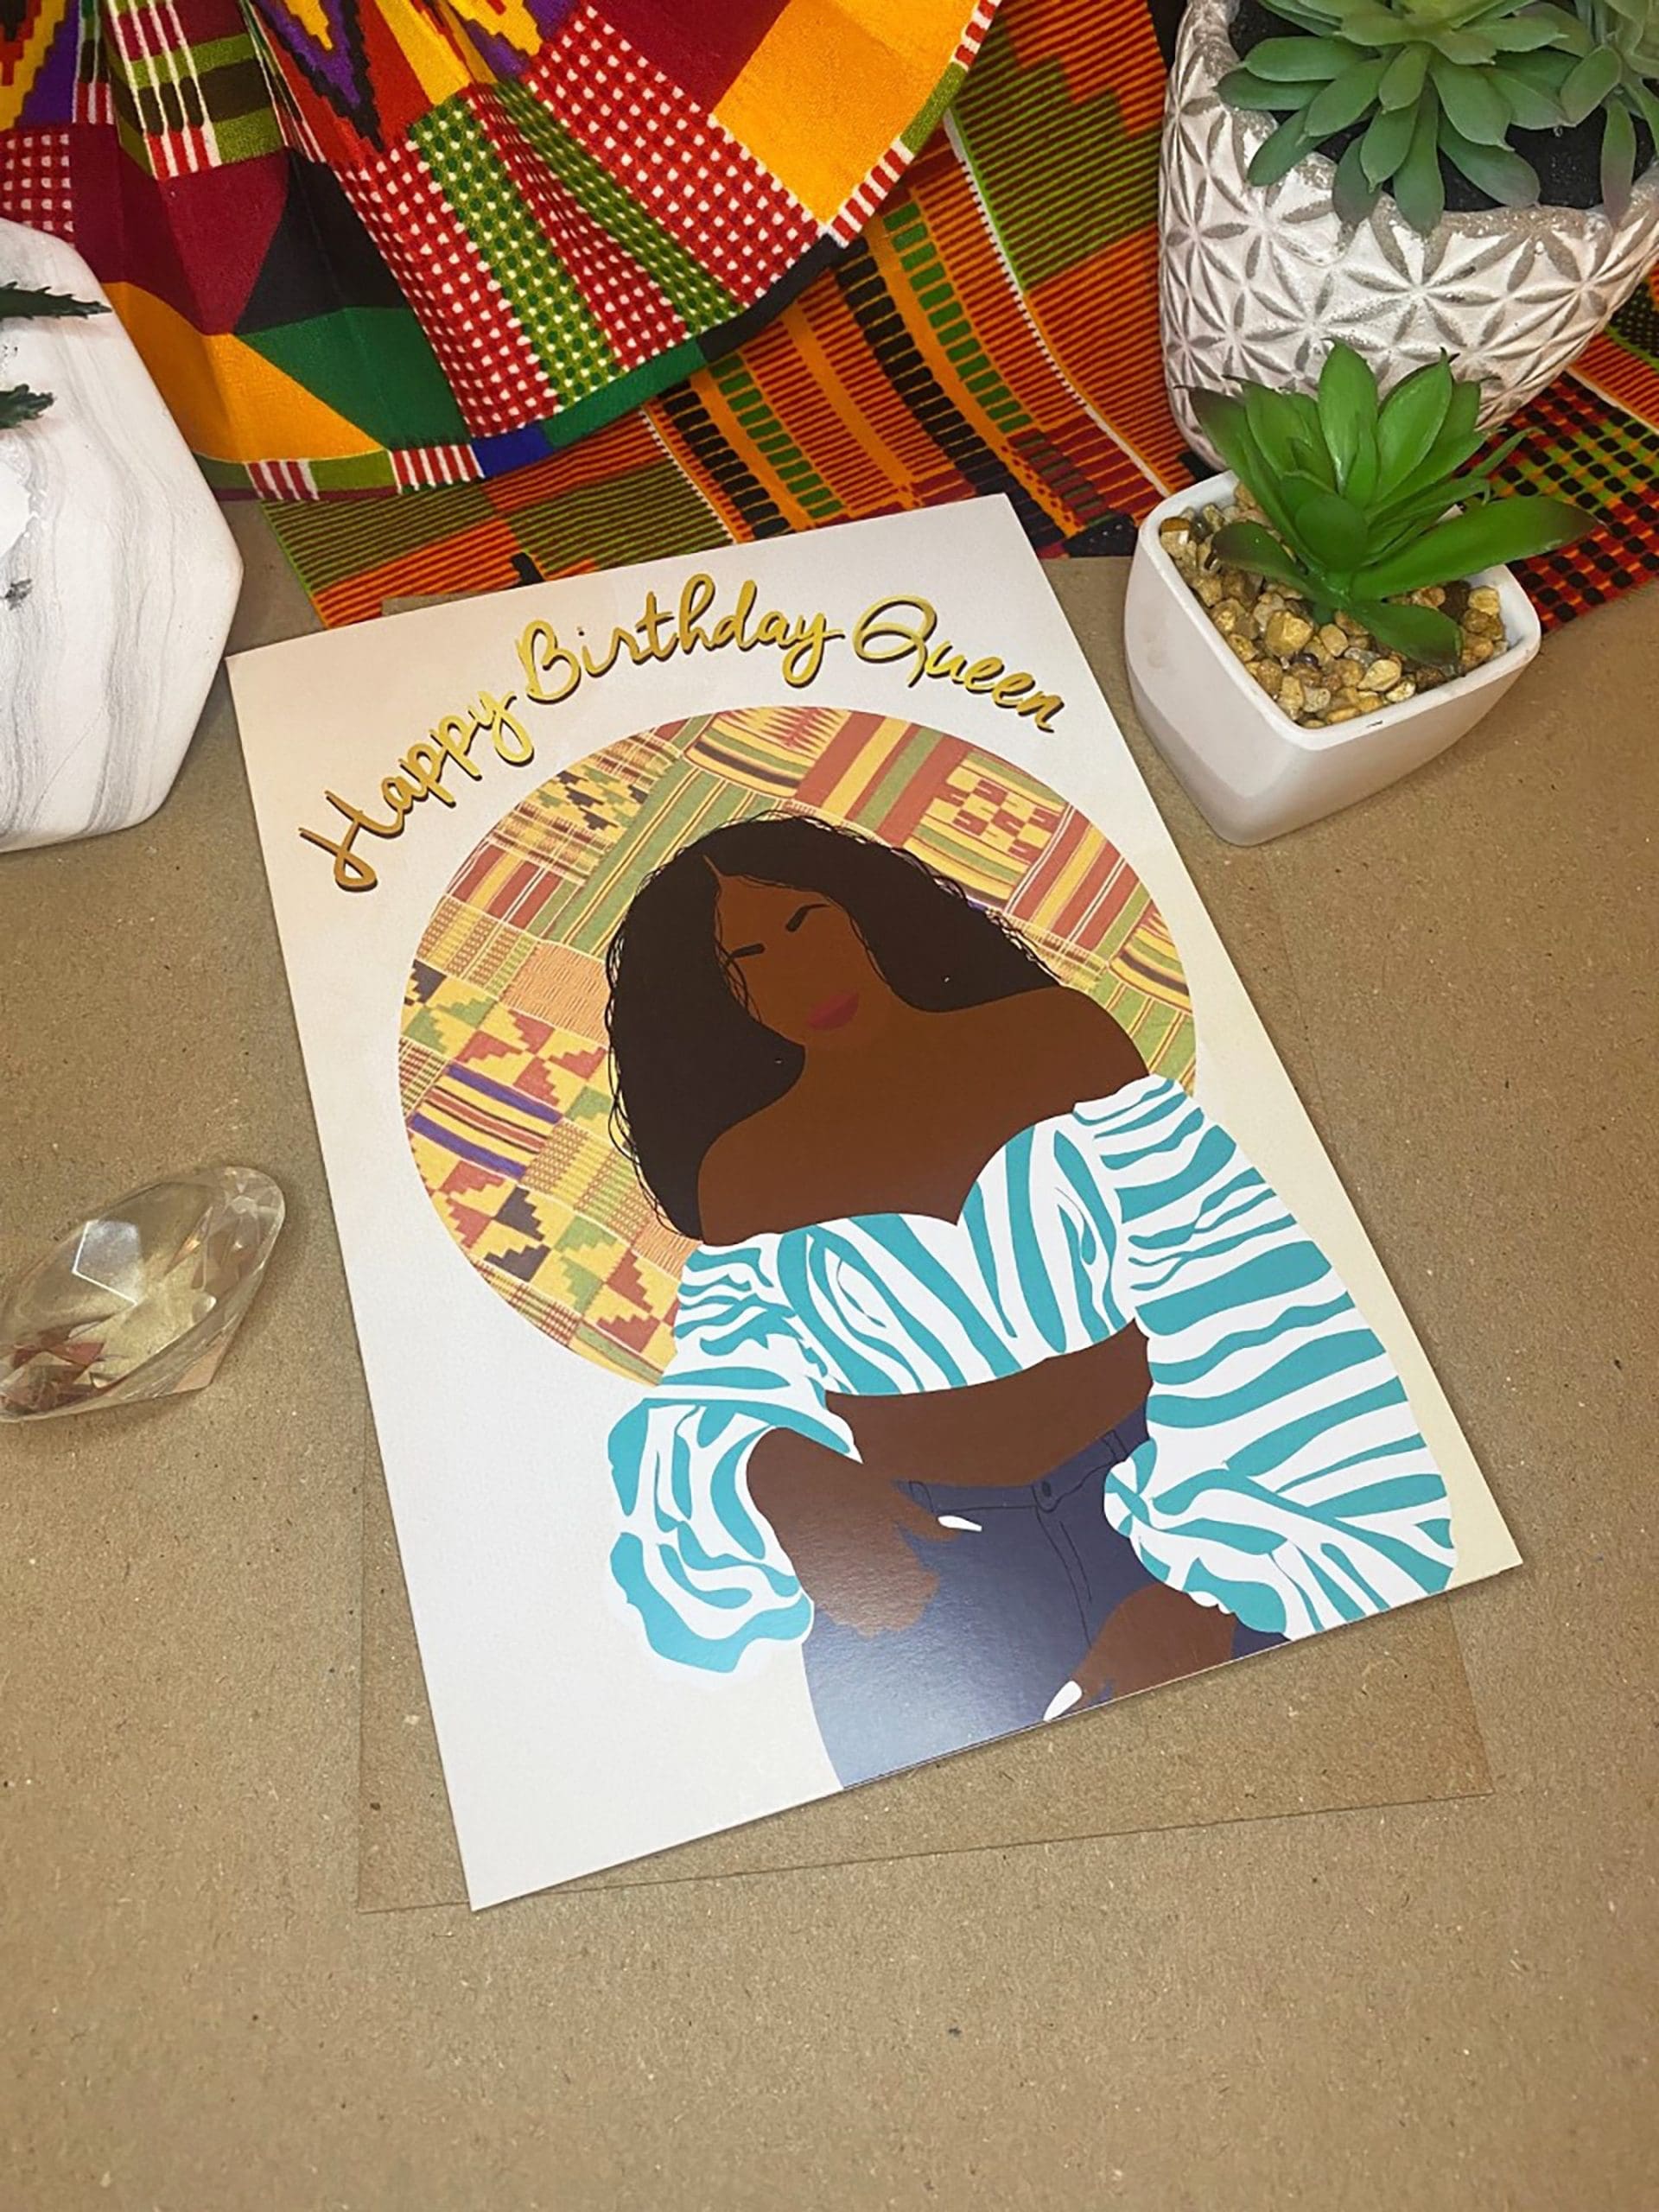 Black Girl Birthday Card